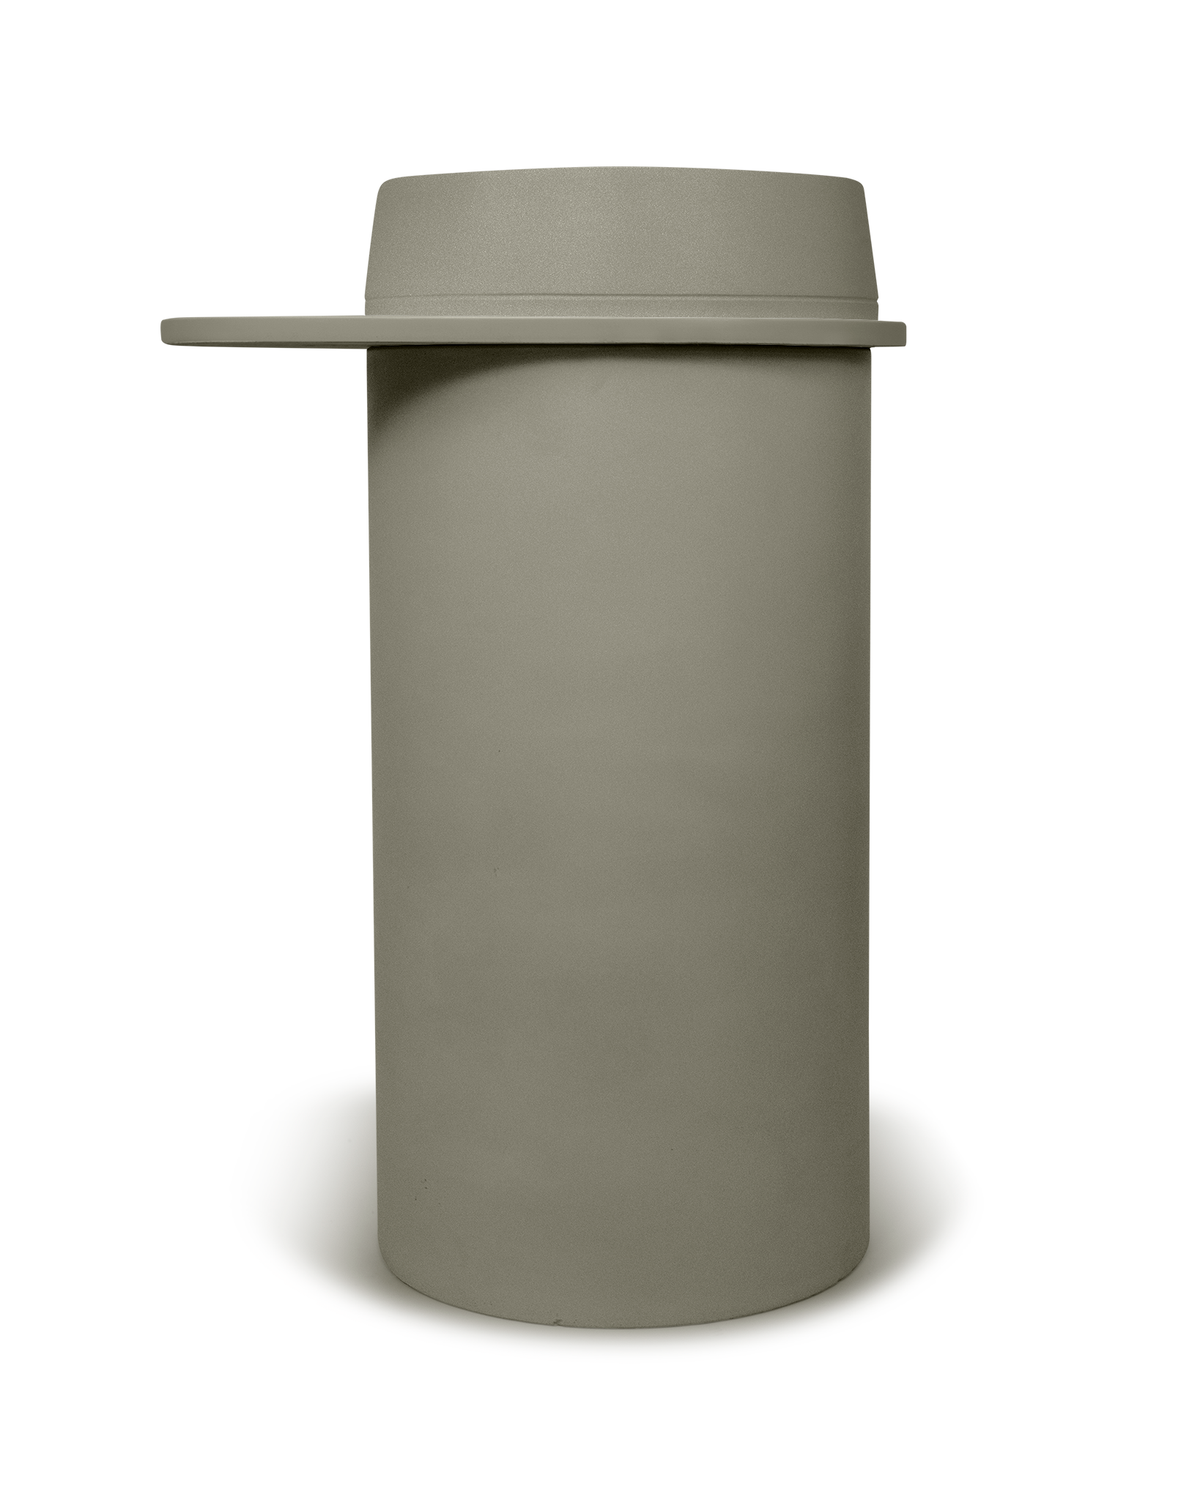 Cylinder - Funl Basin (Olive)